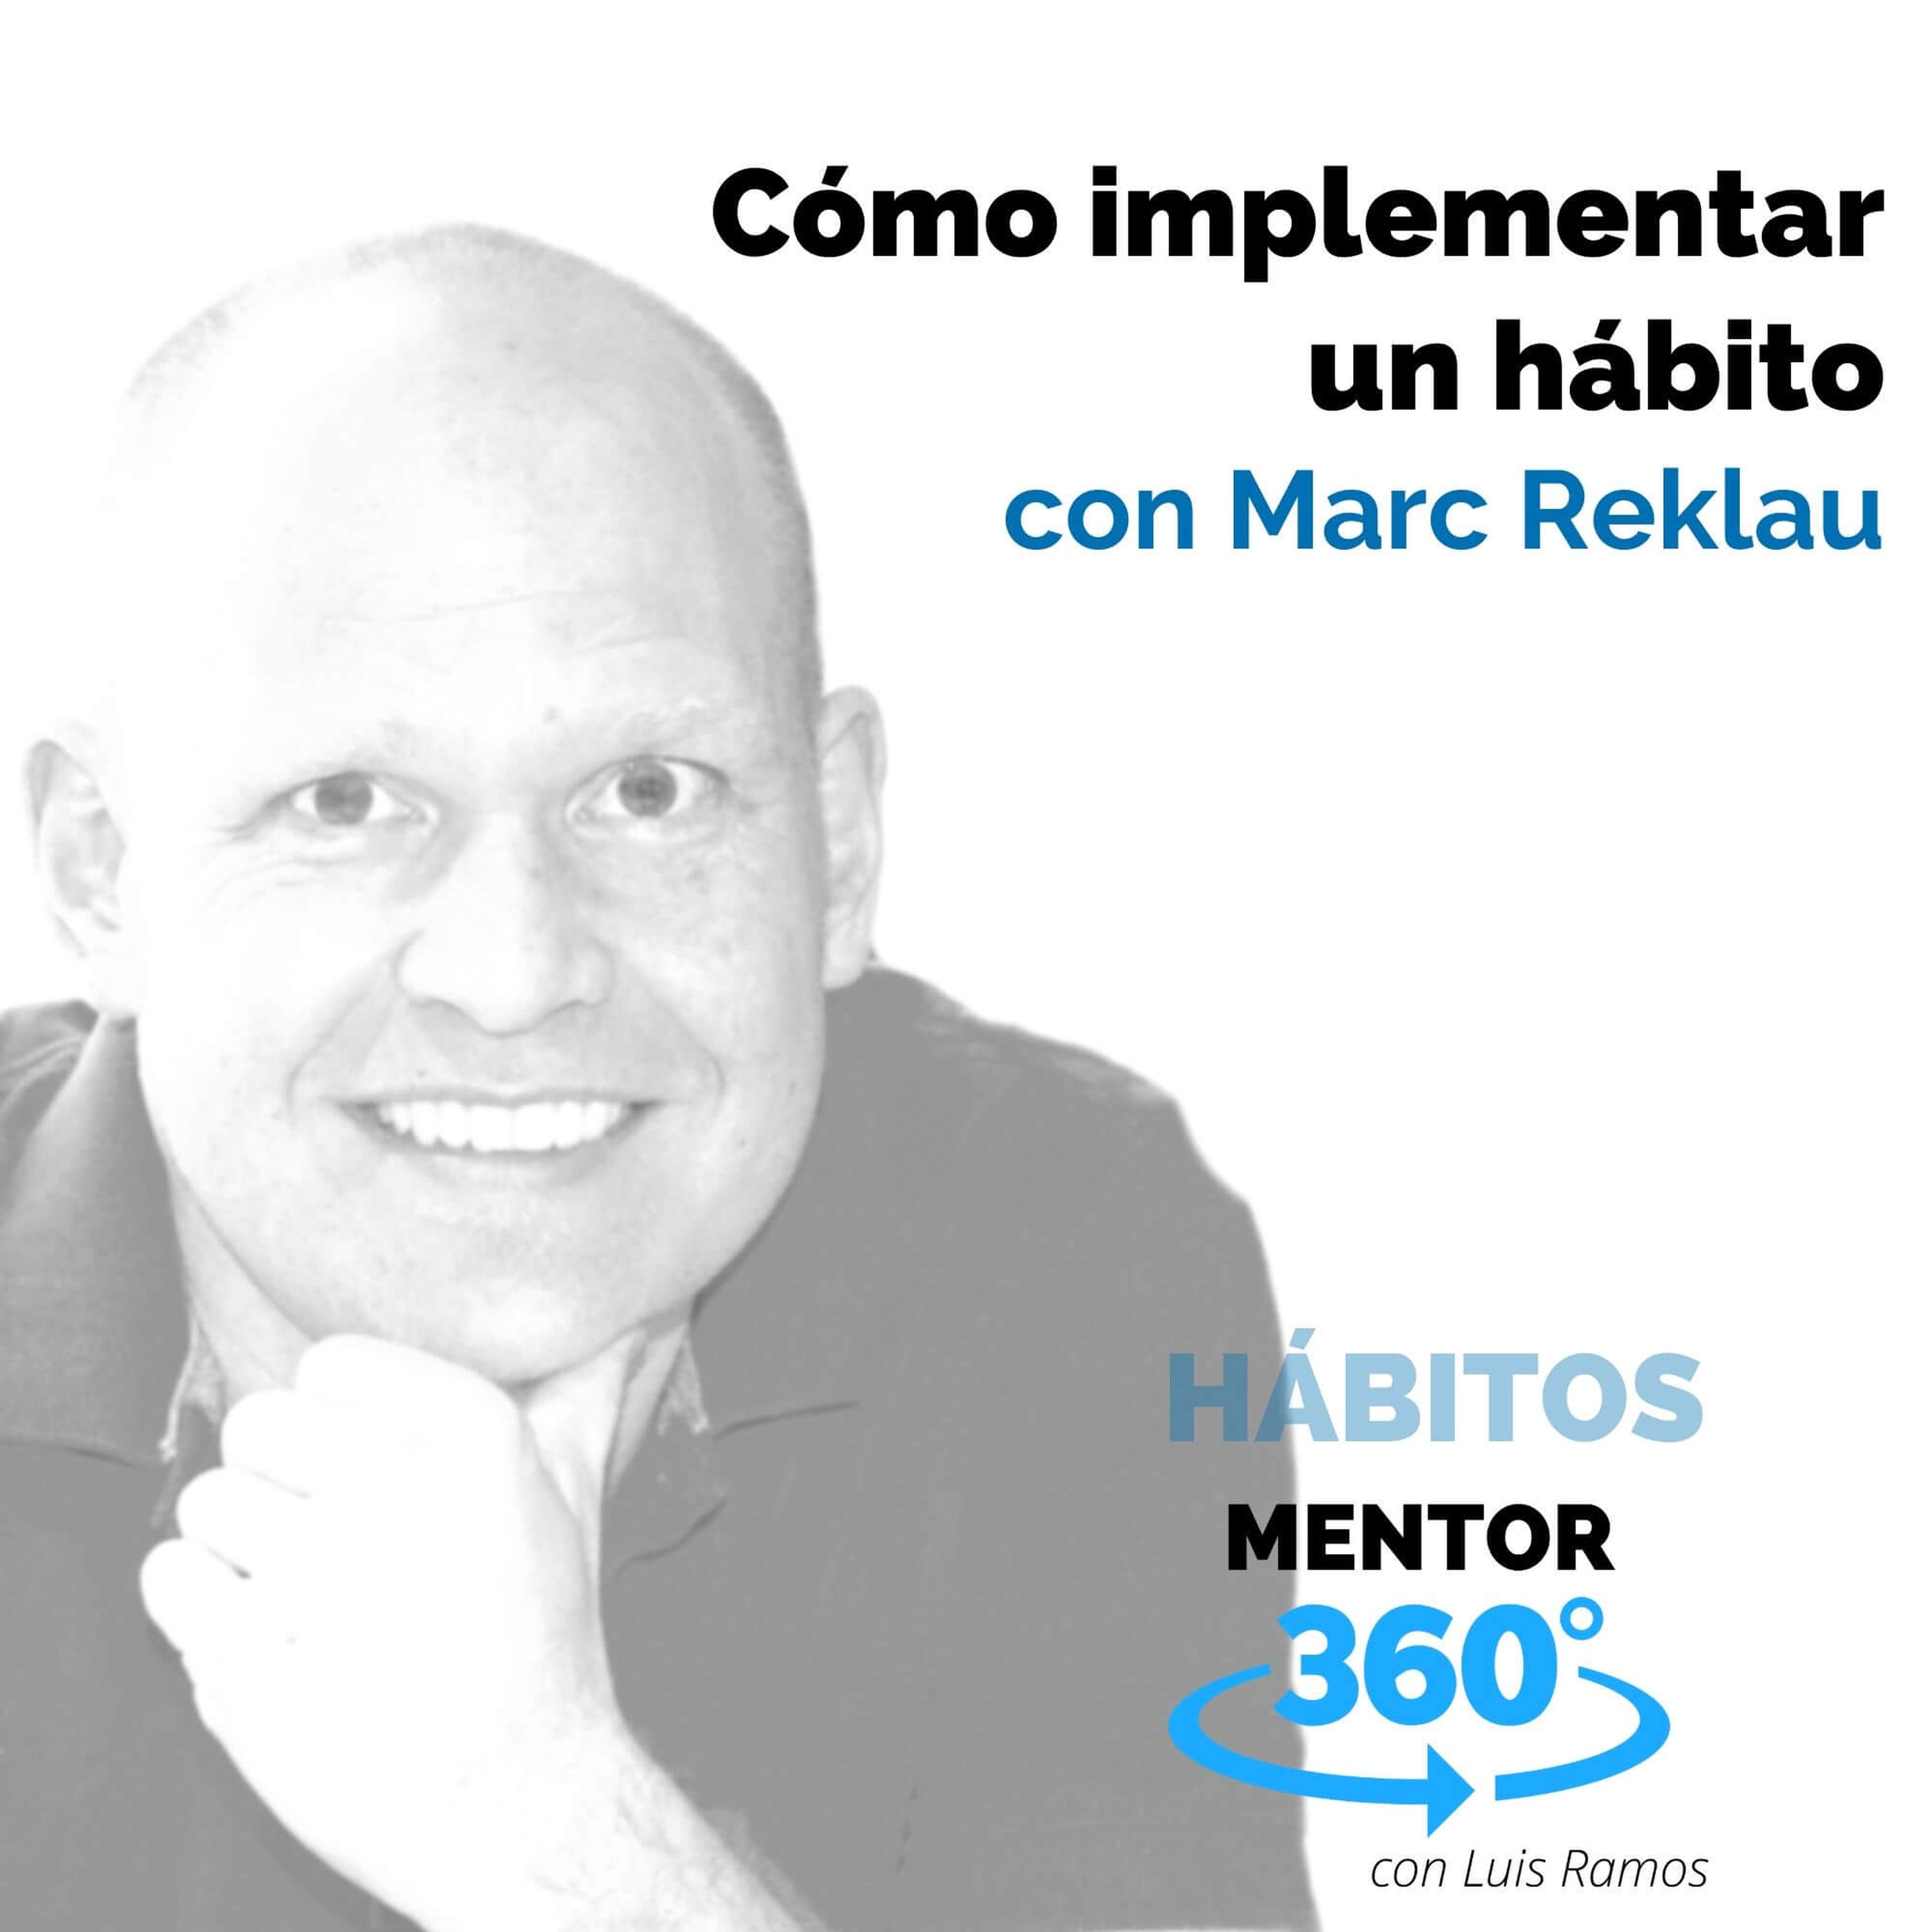 Cómo implementar un hábito, con Marc Reklau - HÁBITOS - MENTOR360